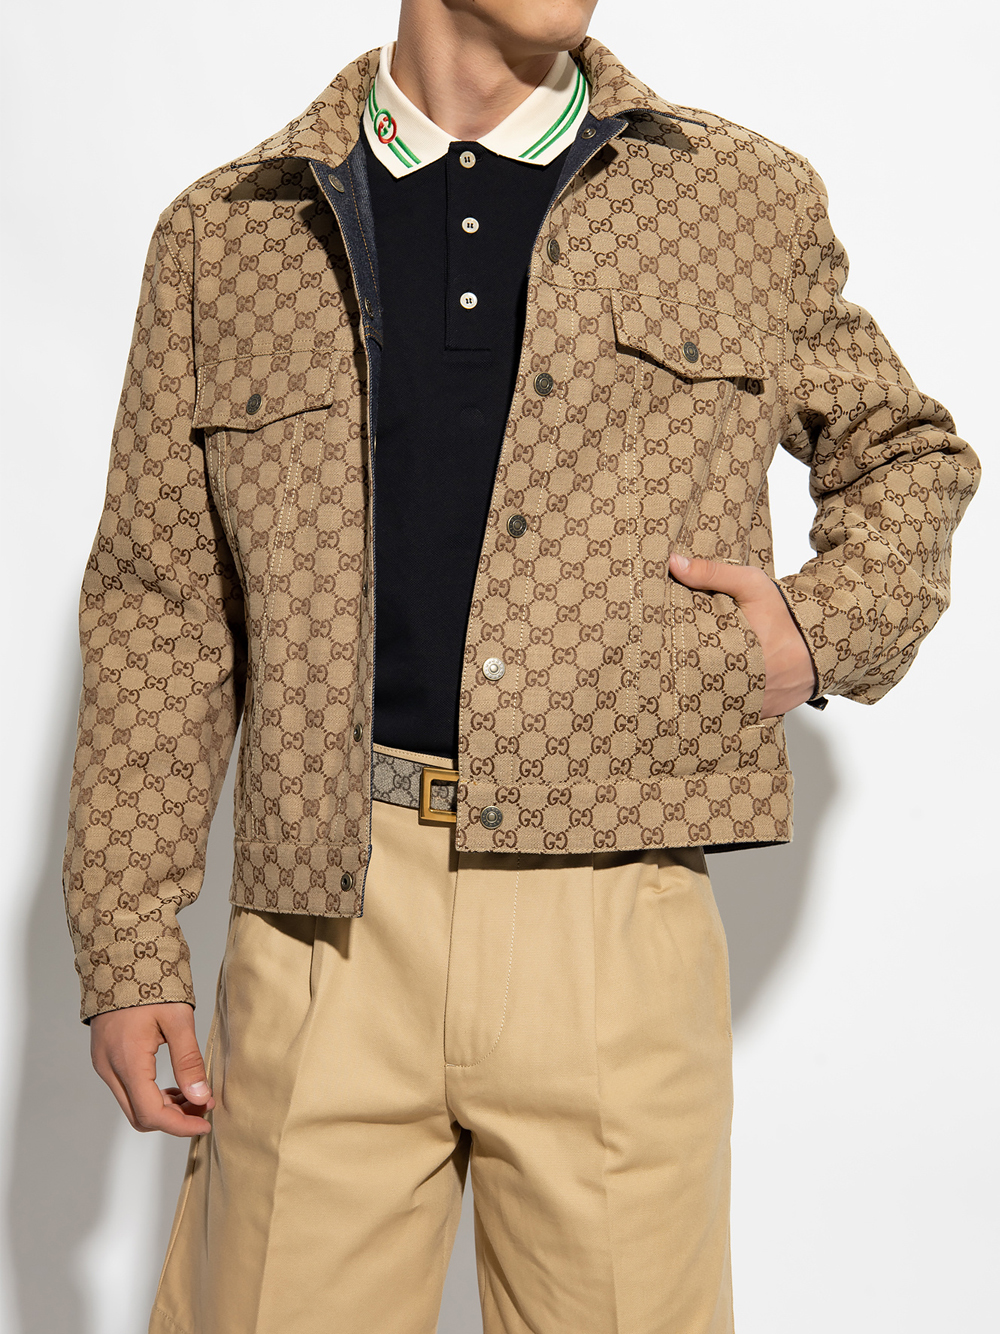 Áo khoác dài tay thiết kế họa tiết chữ GG thời trang cao cấp Gucci GG GC  phong cách trẻ trung, cá tính | Shopee Việt Nam